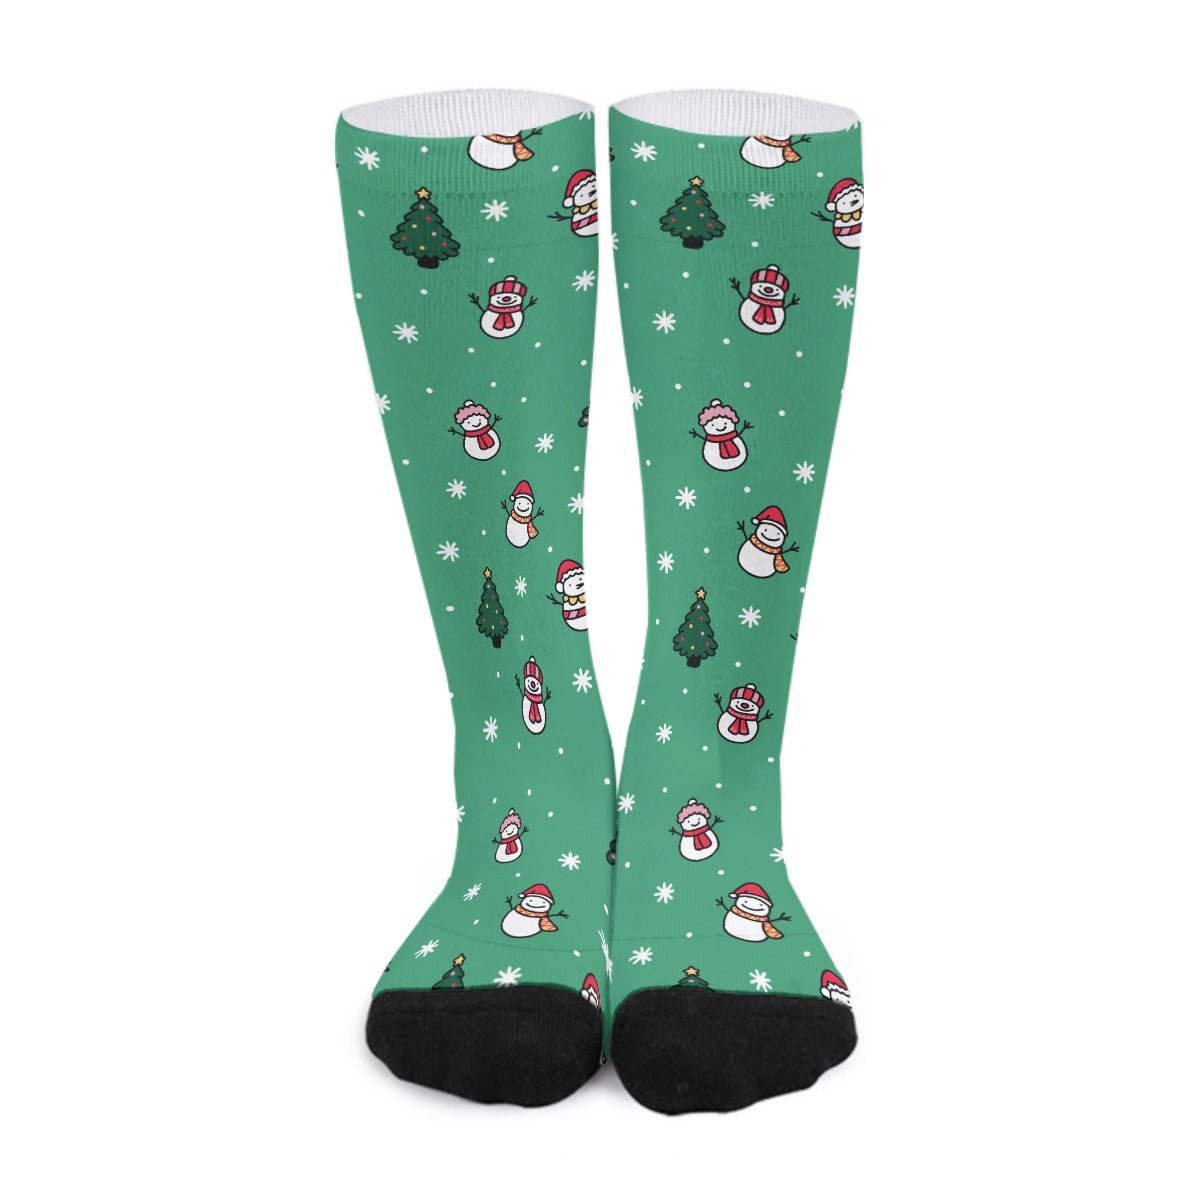 Unisex Long Socks - Green Snowman - Festive Style